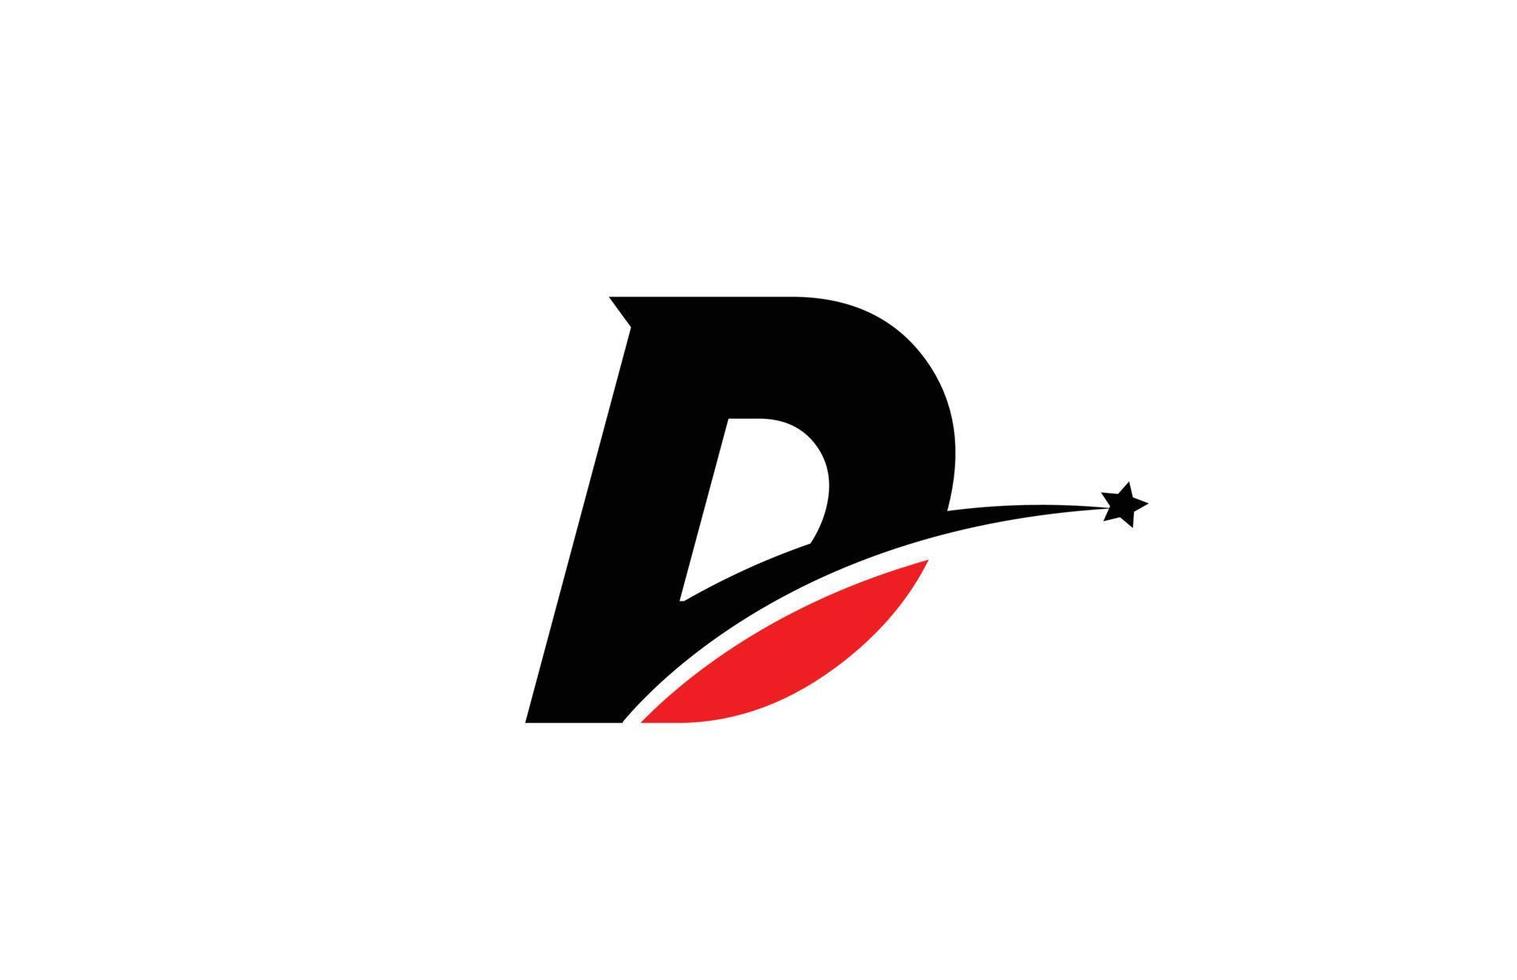 Diseño de icono de logotipo de letra del alfabeto negro rojo d con swoosh y estrella. plantilla creativa para negocios y empresas. vector